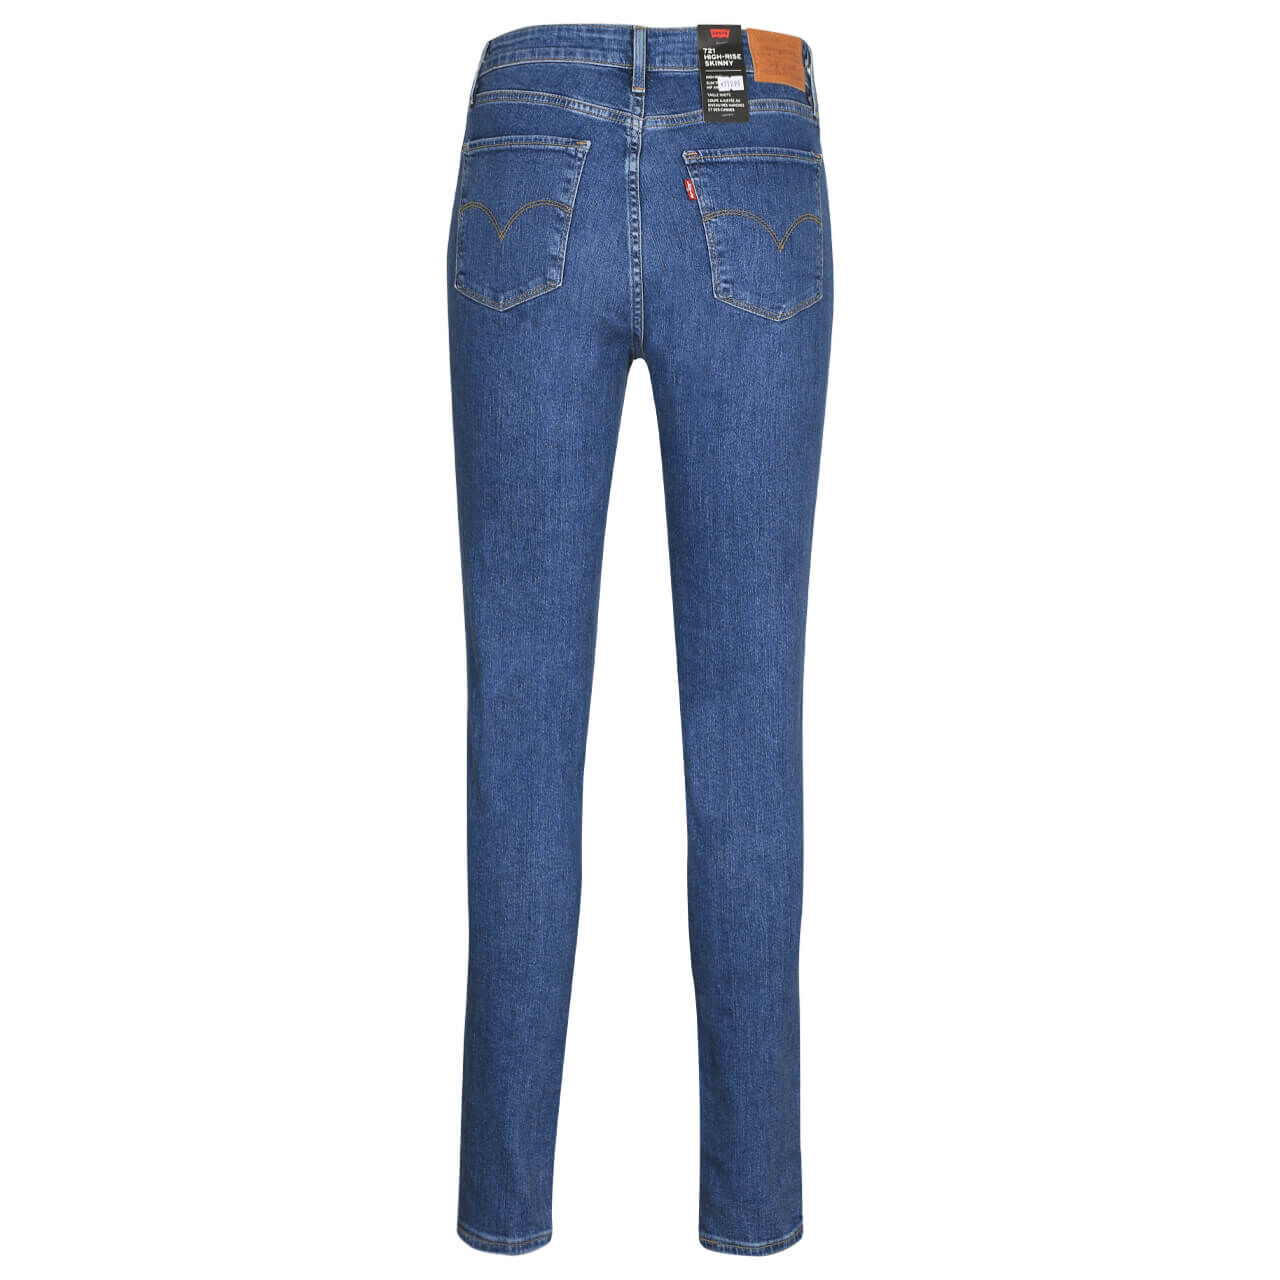 Levis Jeans 721 für Damen in Dunkelblau angewaschen, FarbNr.: 0422